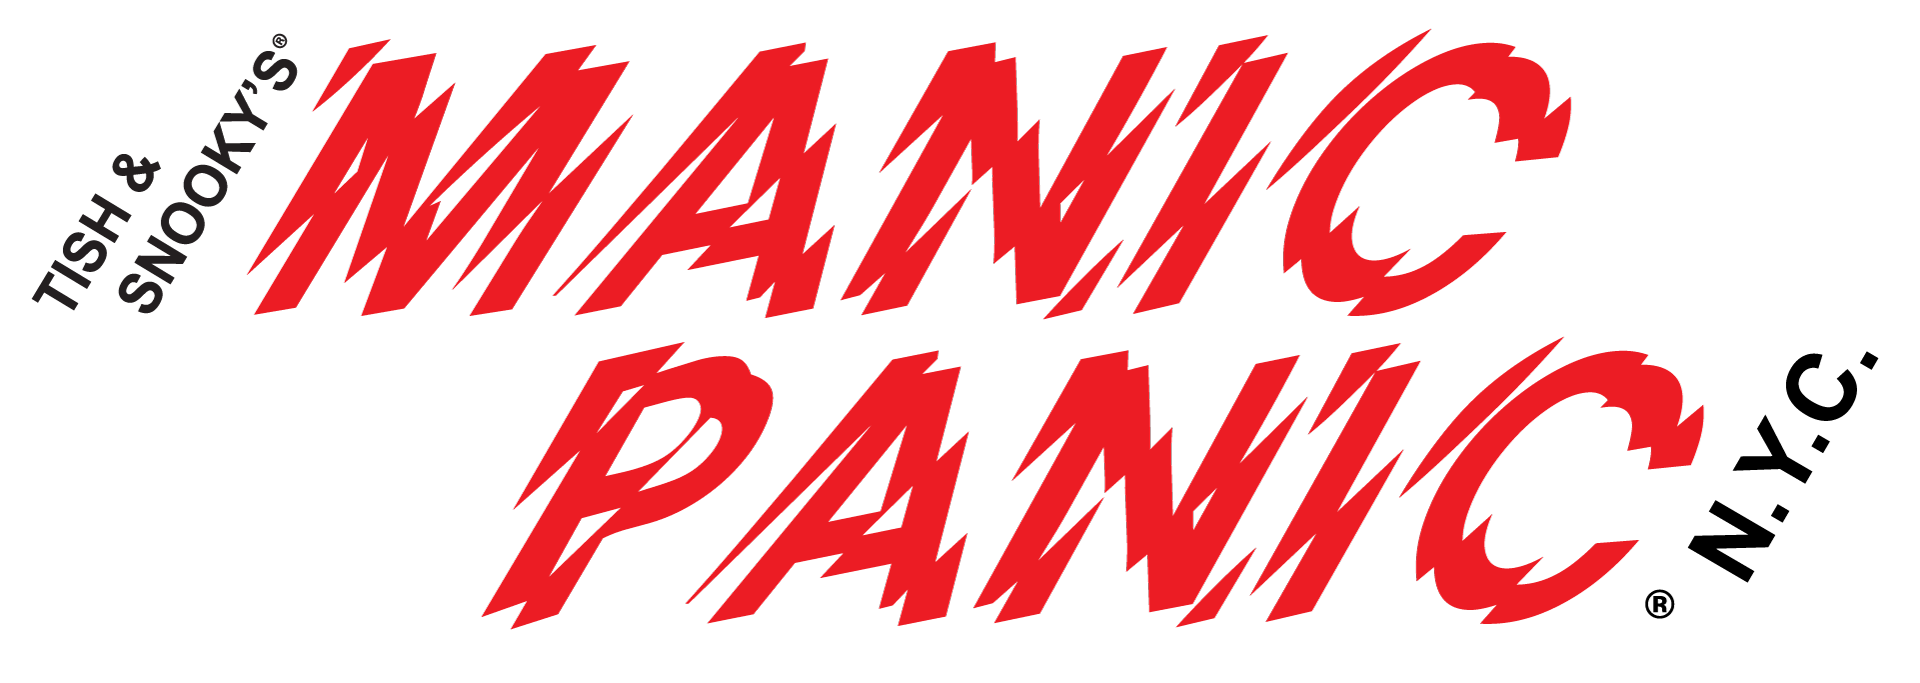 2018-Manic-Panic-Logo.png